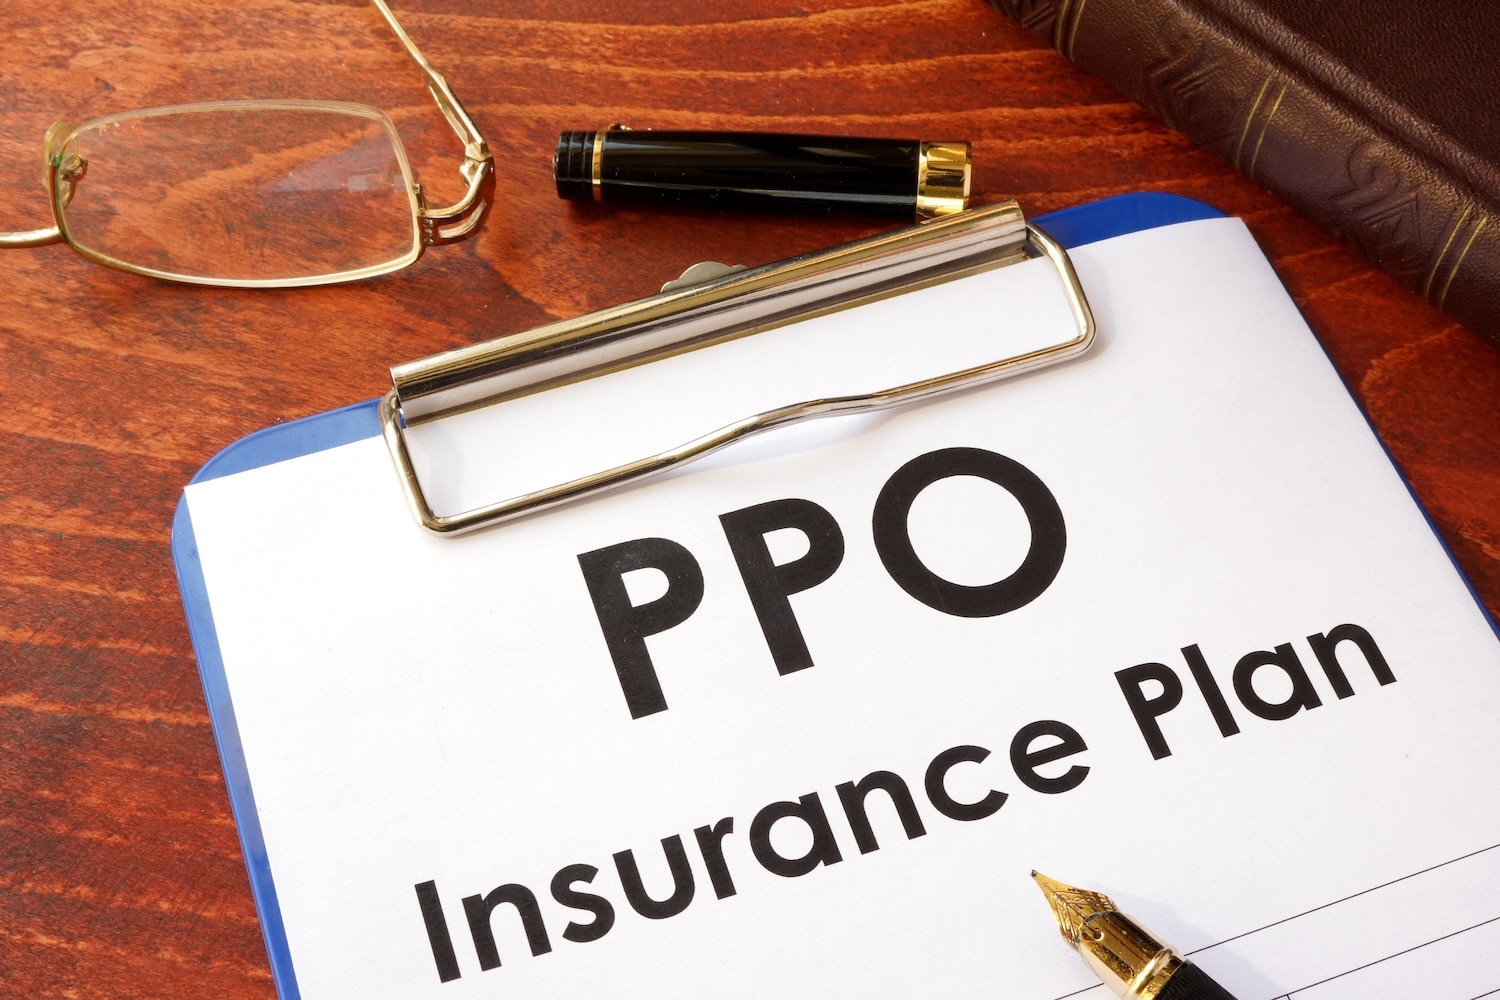 PPO Insurance Plan on clipboard